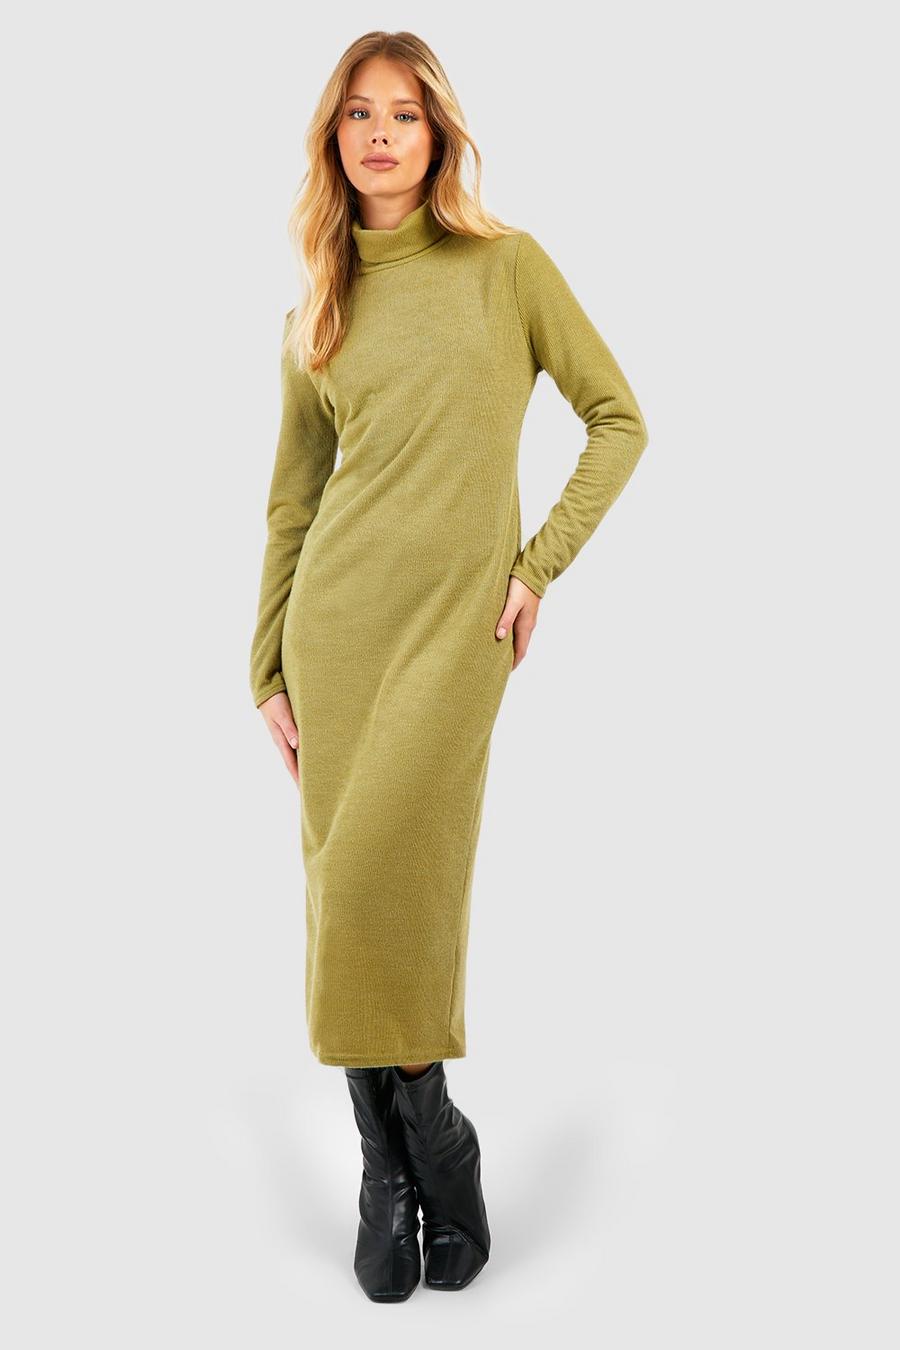 Olive Turtleneck Knit Midaxi Dress